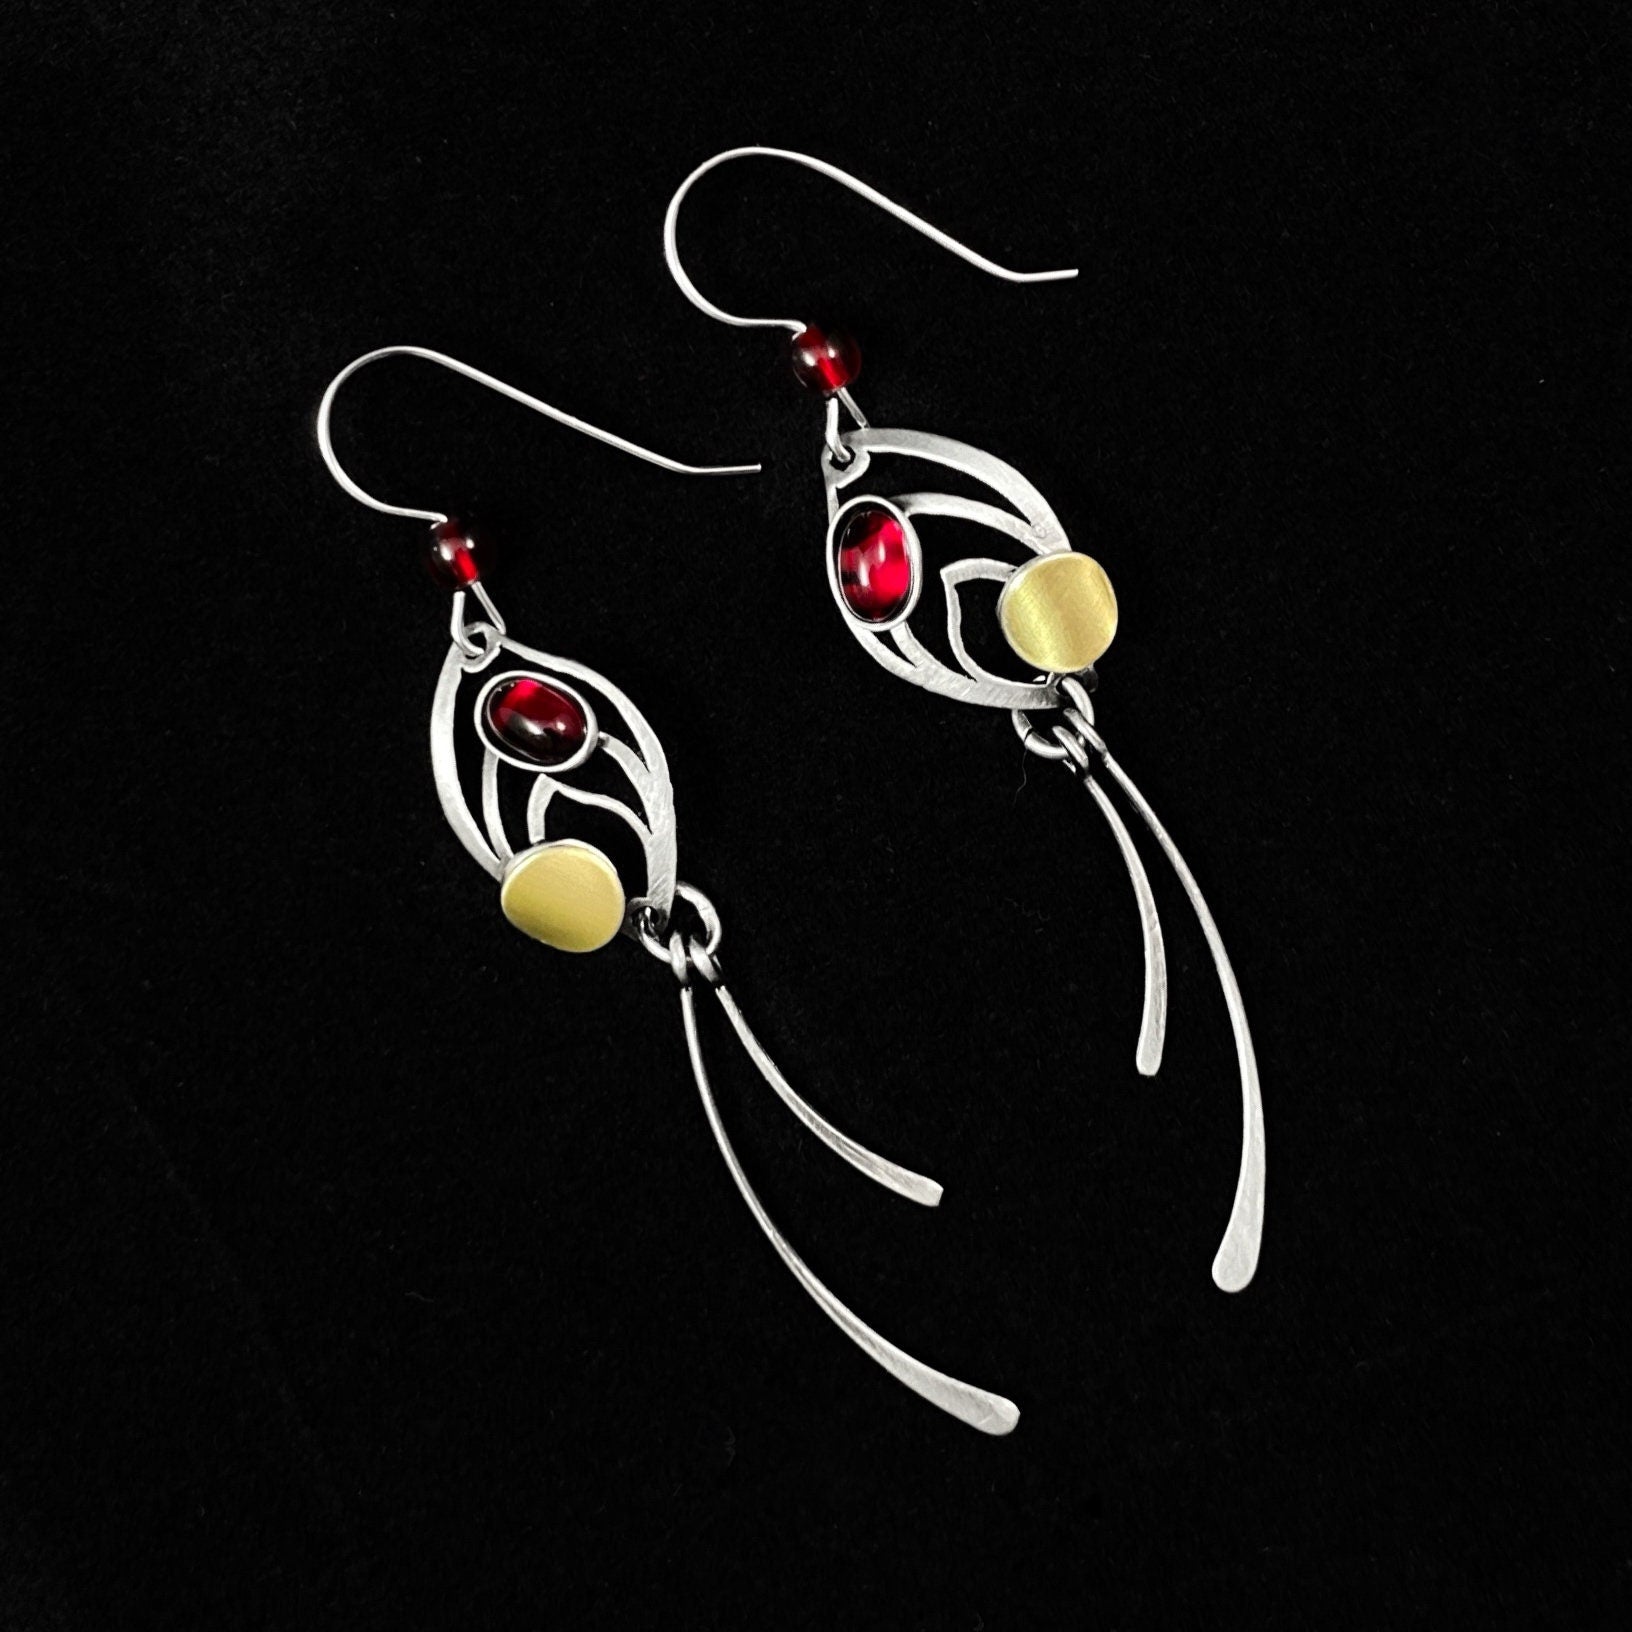 Lightweight Handmade Geometric Aluminum Earrings, Red Fishtail